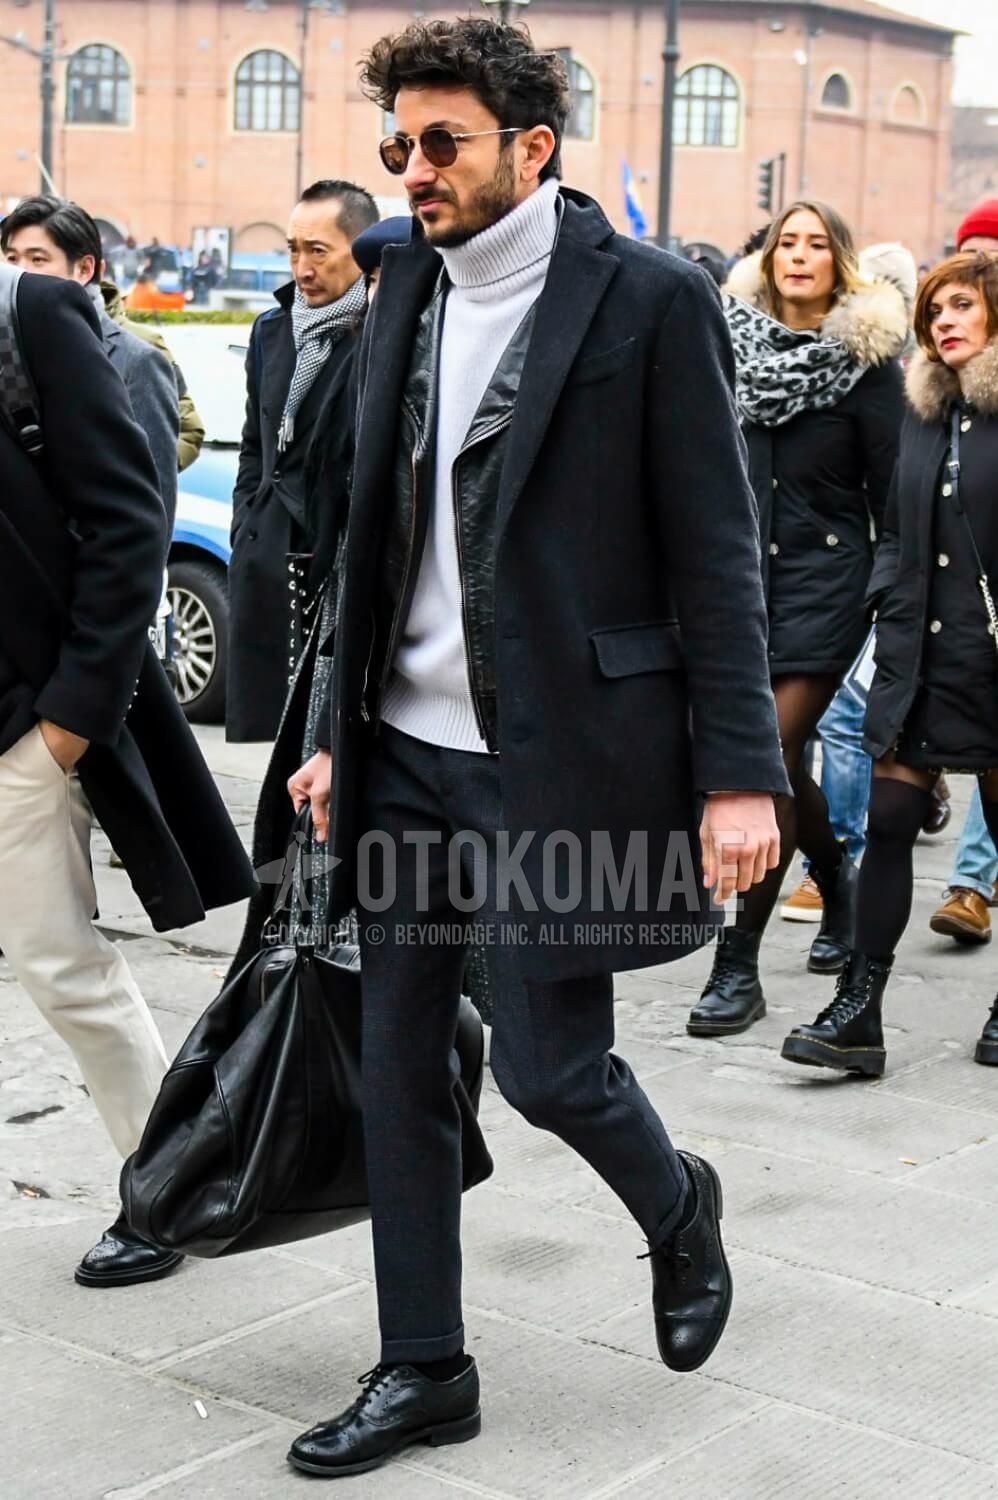 白ニット コーデ メンズ特集 秋冬に実践したい大人の着こなし アイテムを紹介 メンズファッションメディア Otokomae